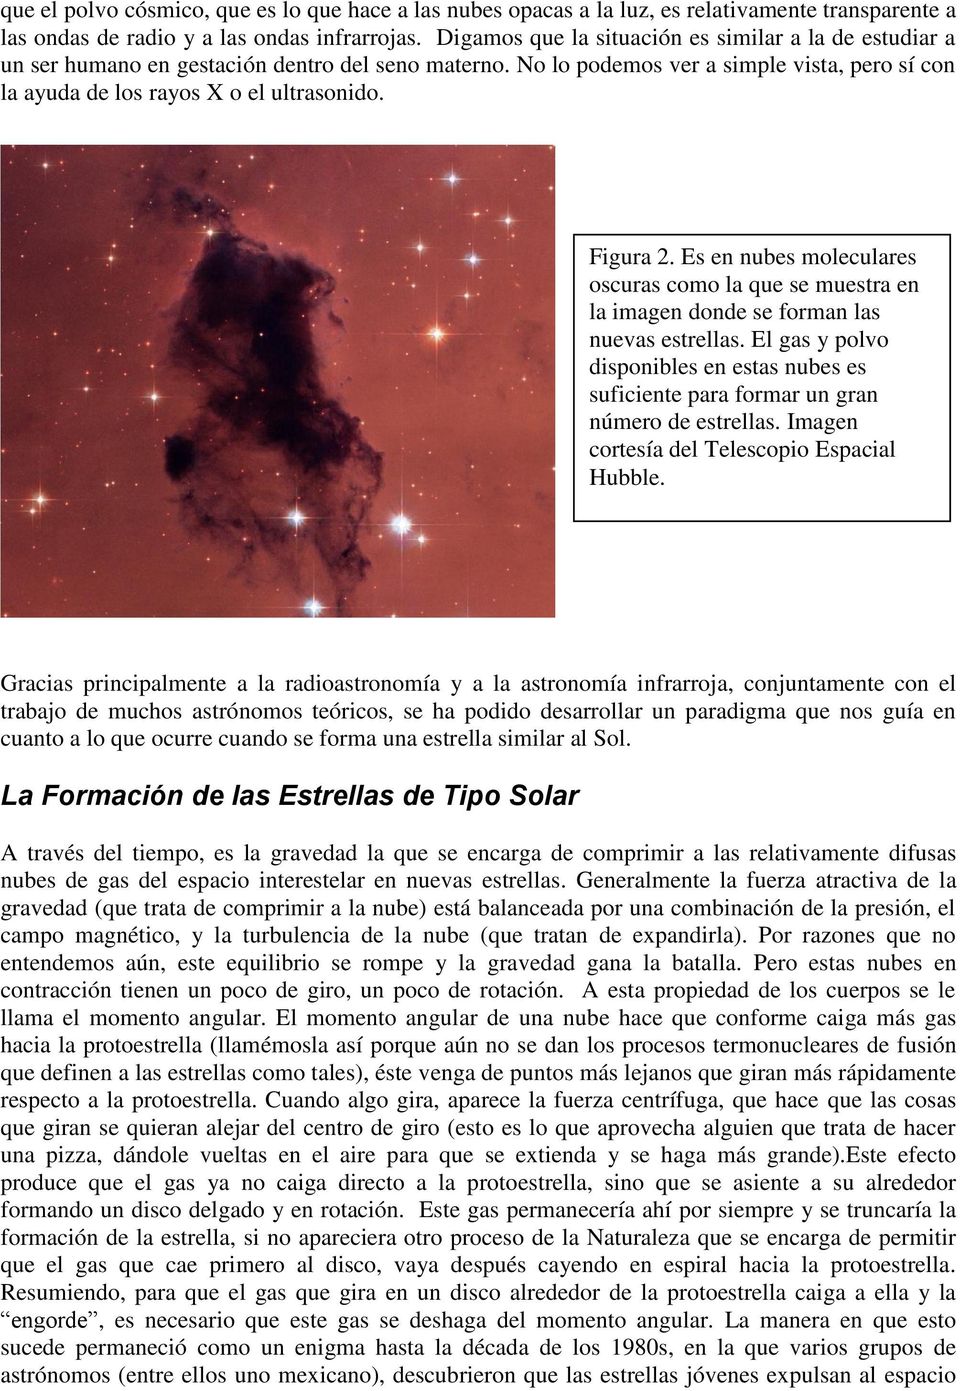 Figura 2. Es en nubes moleculares oscuras como la que se muestra en la imagen donde se forman las nuevas estrellas.